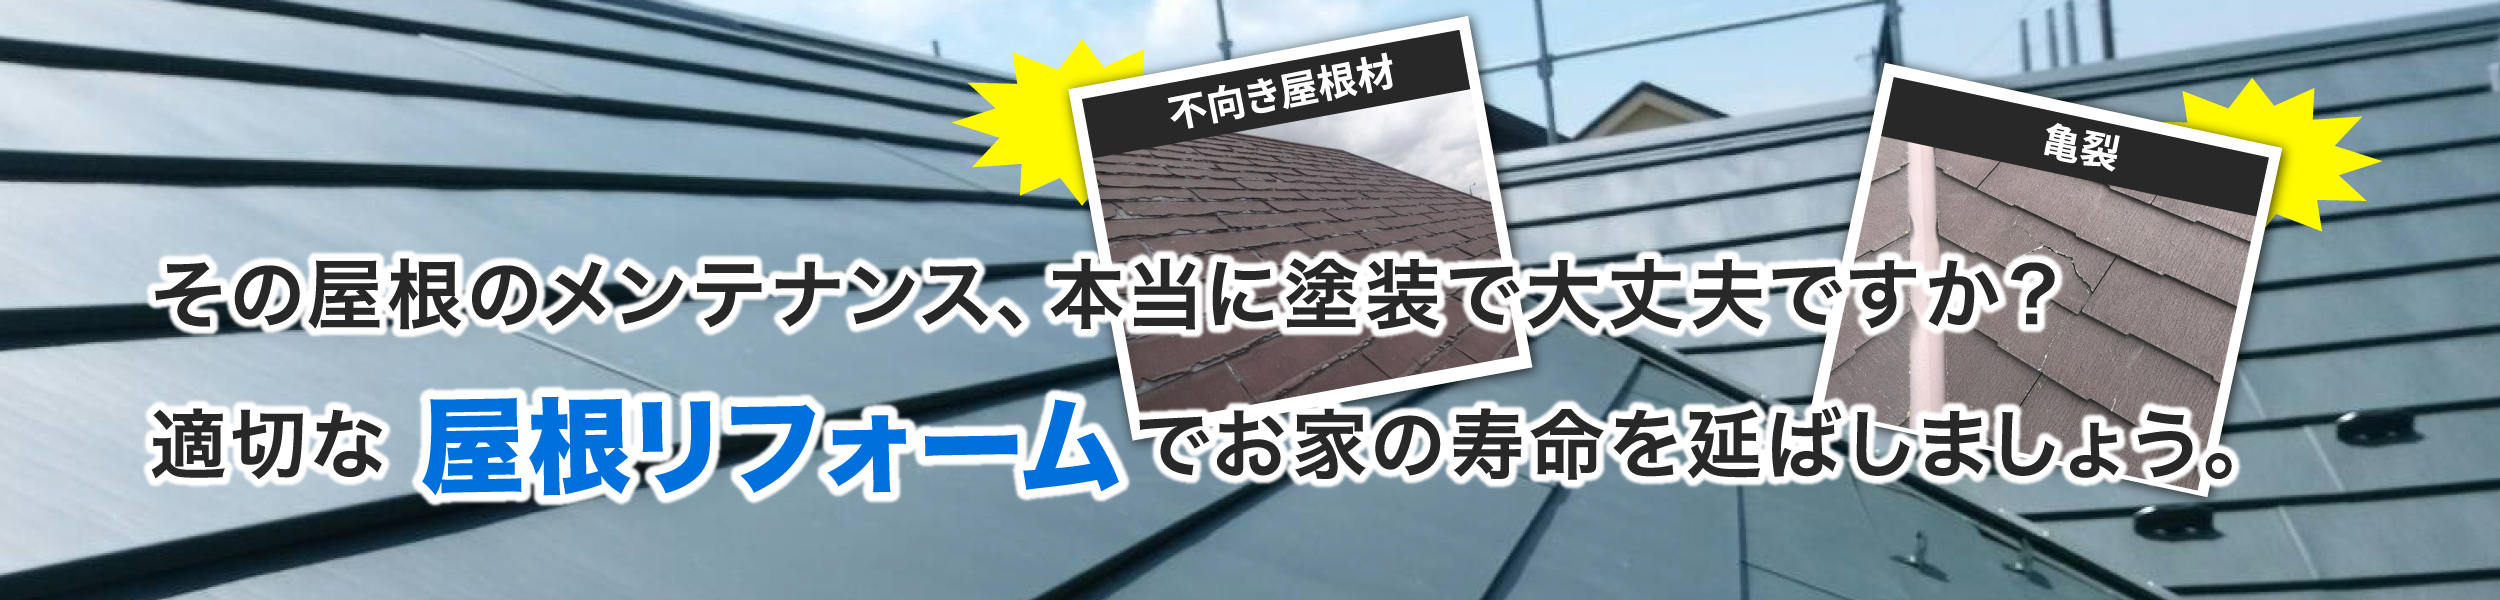 その屋根のメンテナンス、本当に塗装で大丈夫ですか？適切な「屋根リフォーム」でお家の寿命を延ばしましょう。